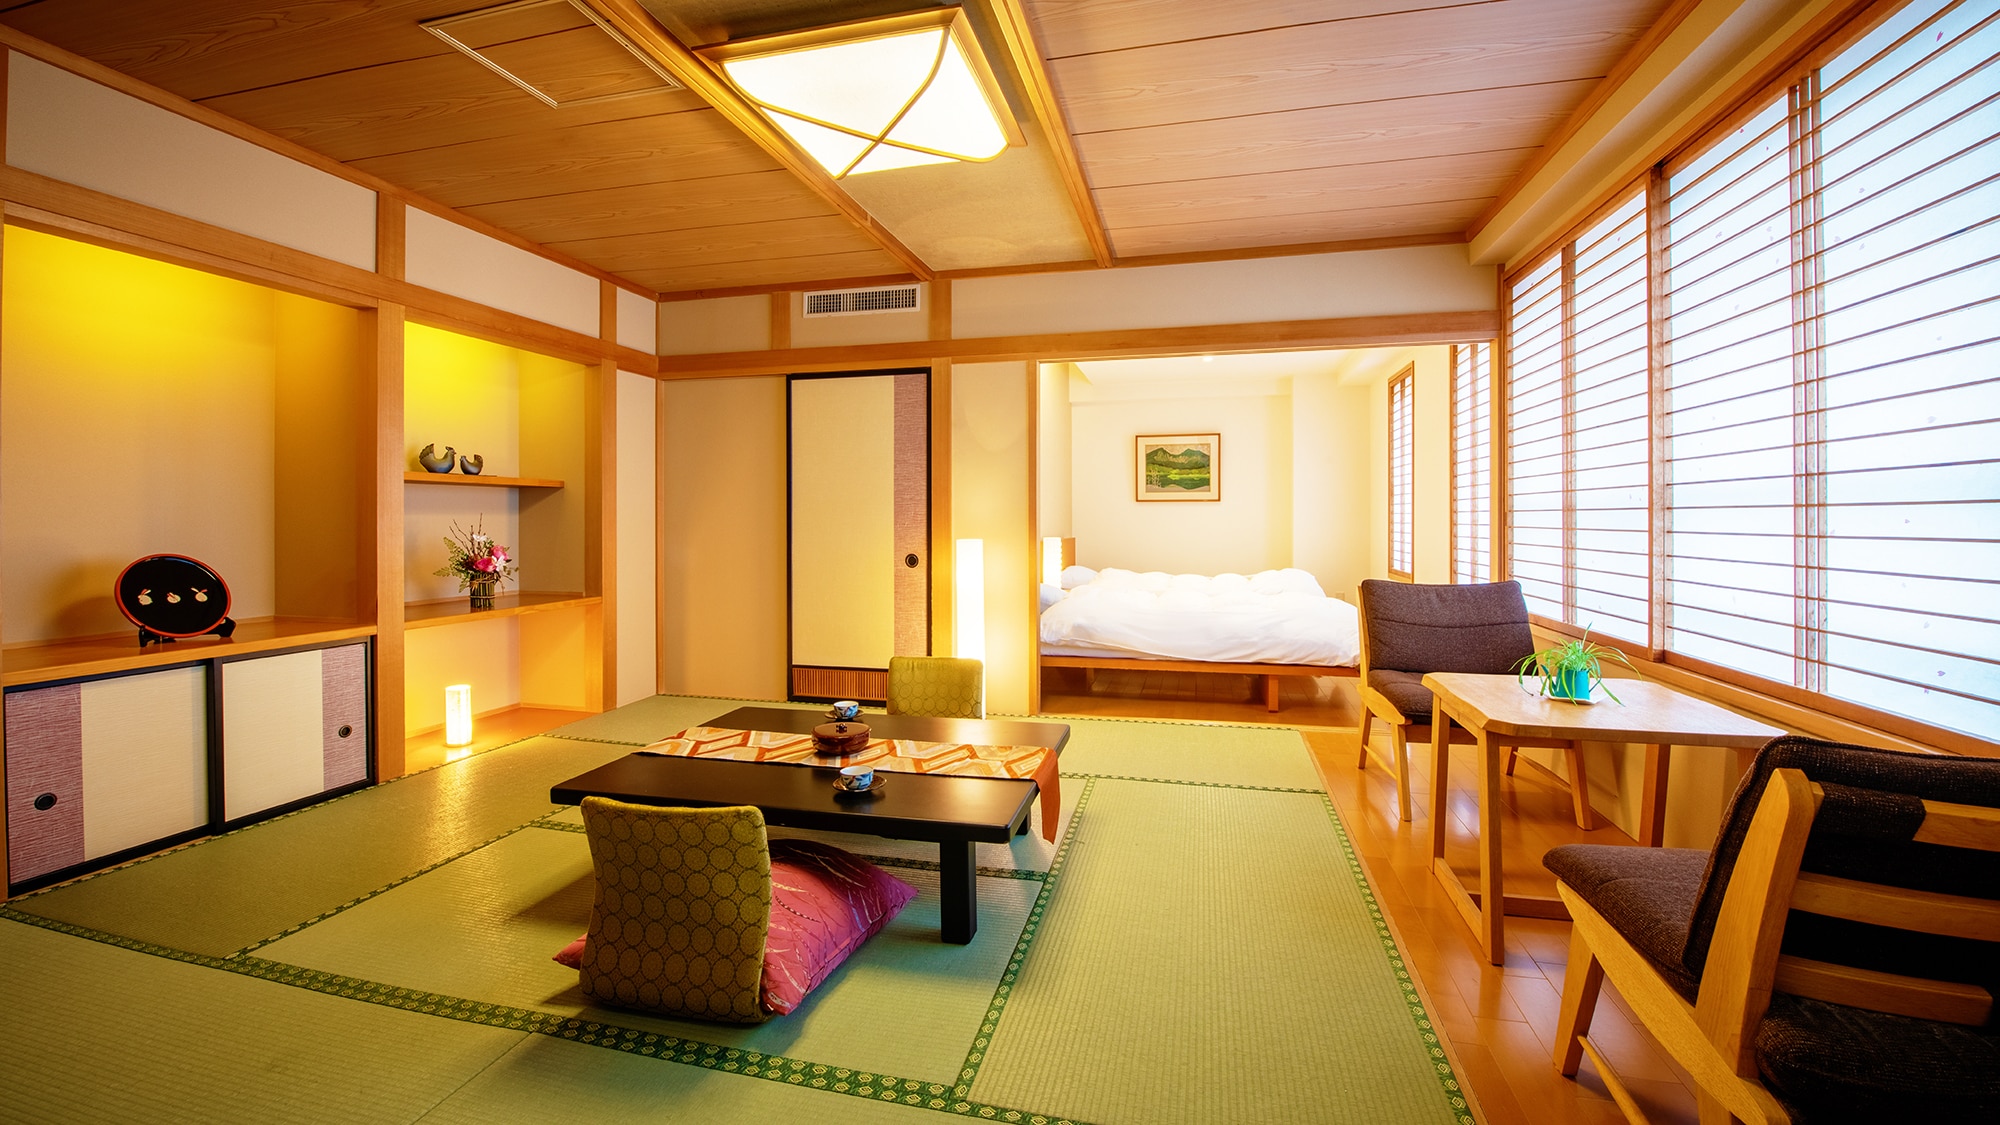 ■ [日式和西式房间10榻榻米+双床] ■ 酒店唯一带床的客房。日式客房可以准备蒲团。